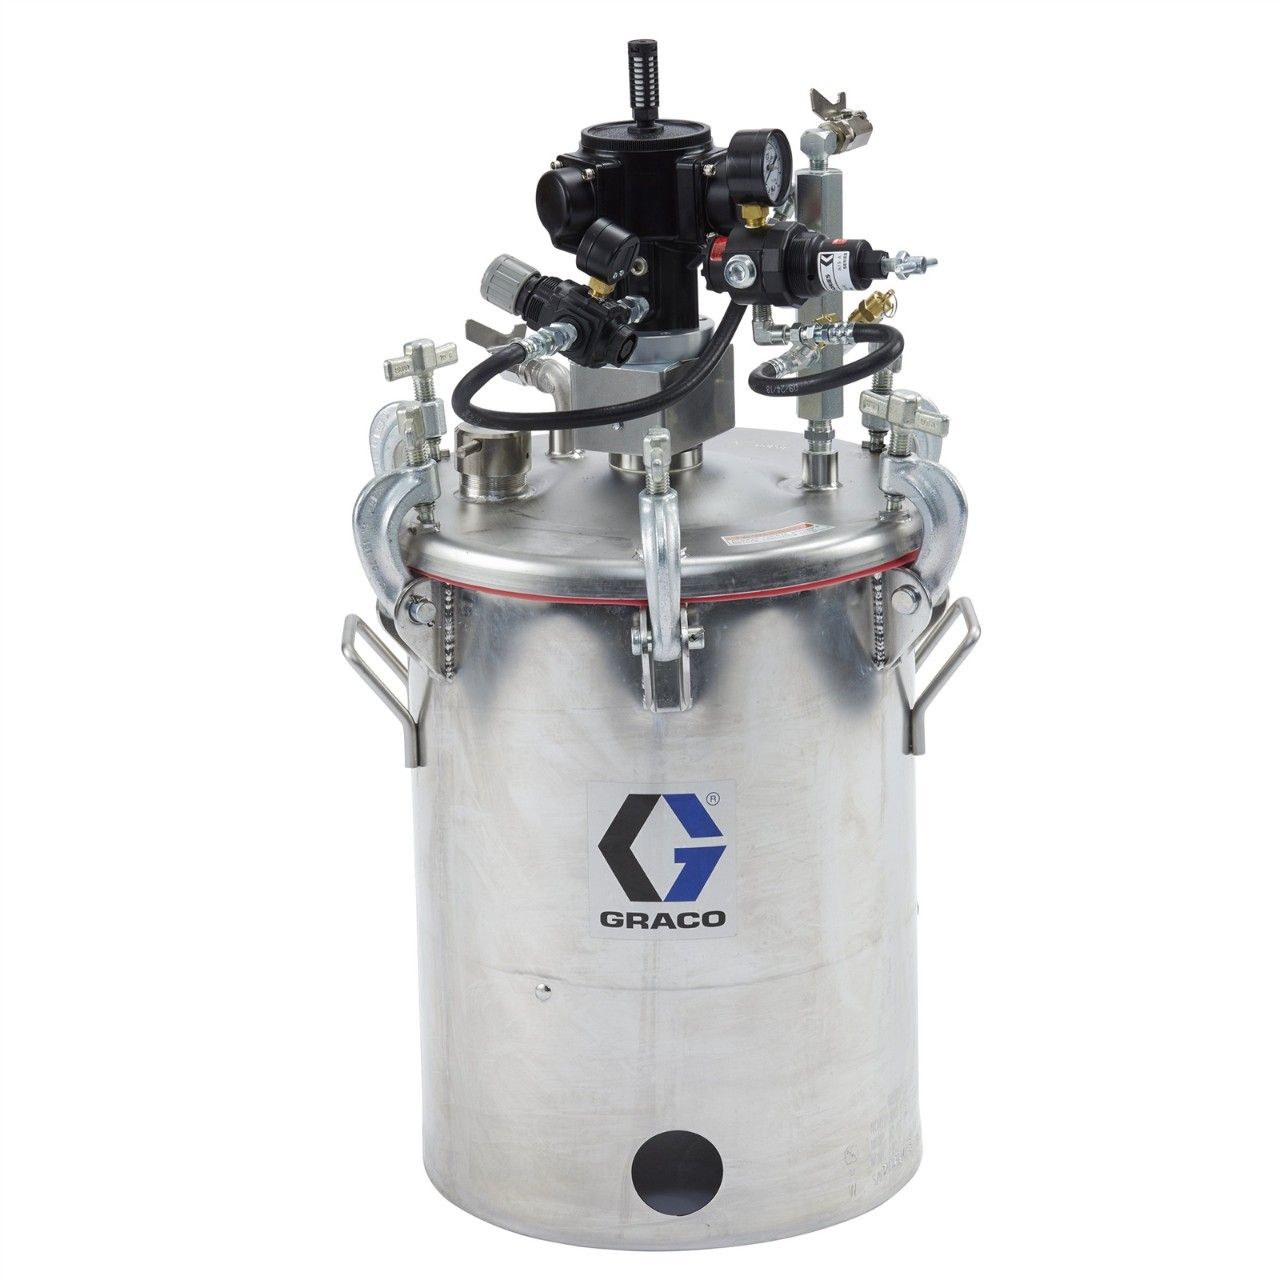 GRACO Rührwerk mit Druckbehälter, 19 Liter (5 Gallonen) - 25C536